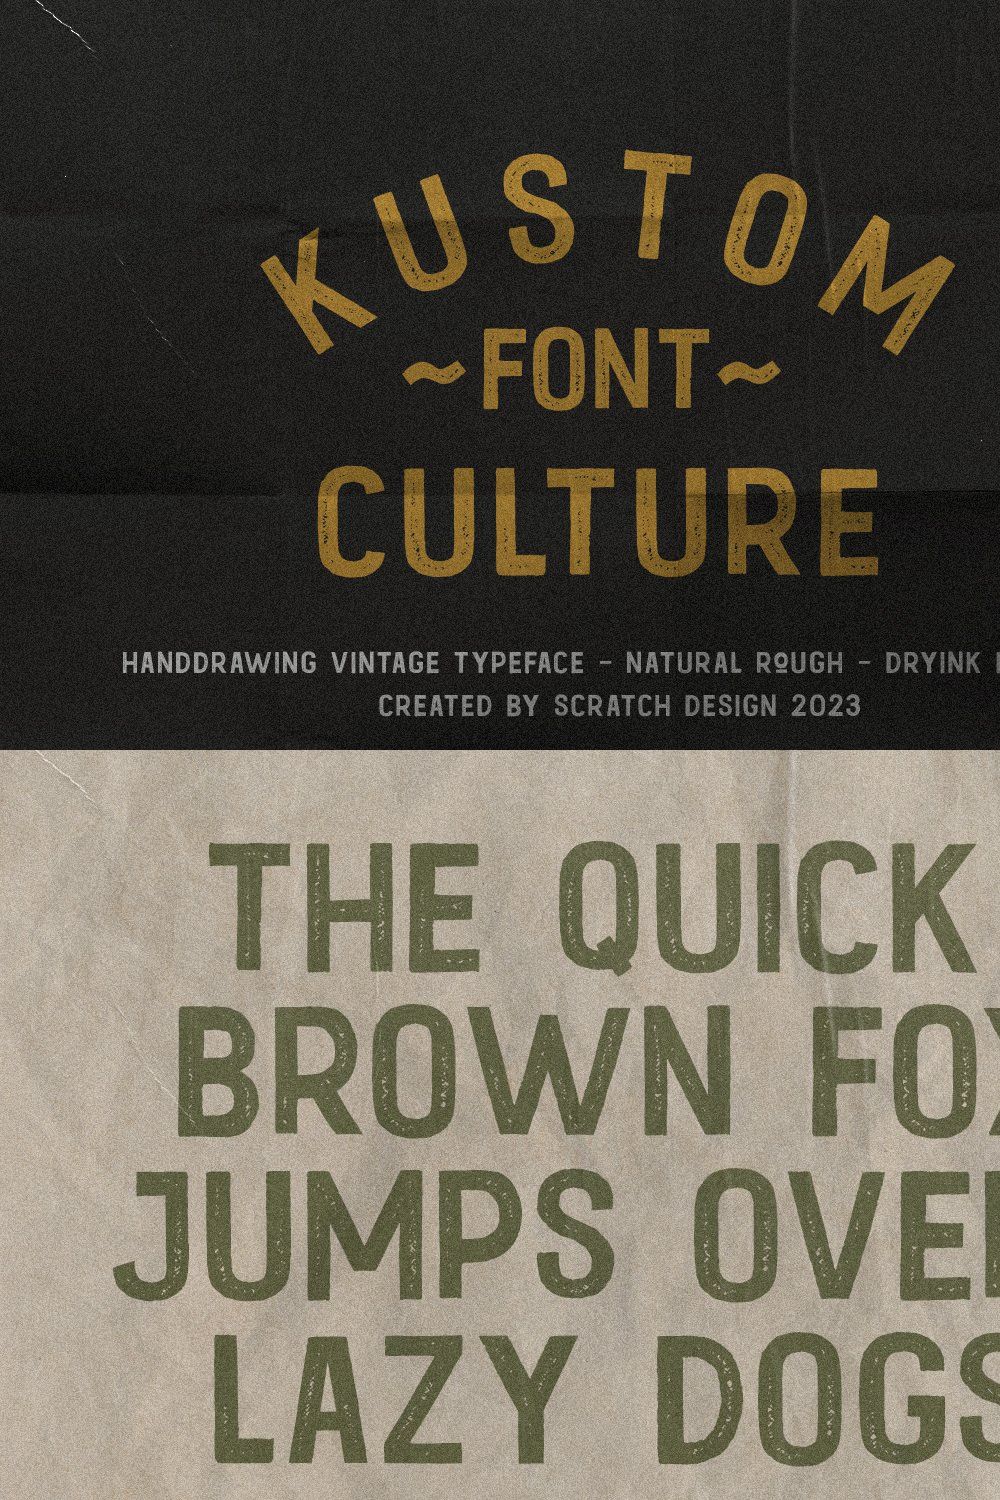 Kustom Culture | Vintage Font pinterest preview image.